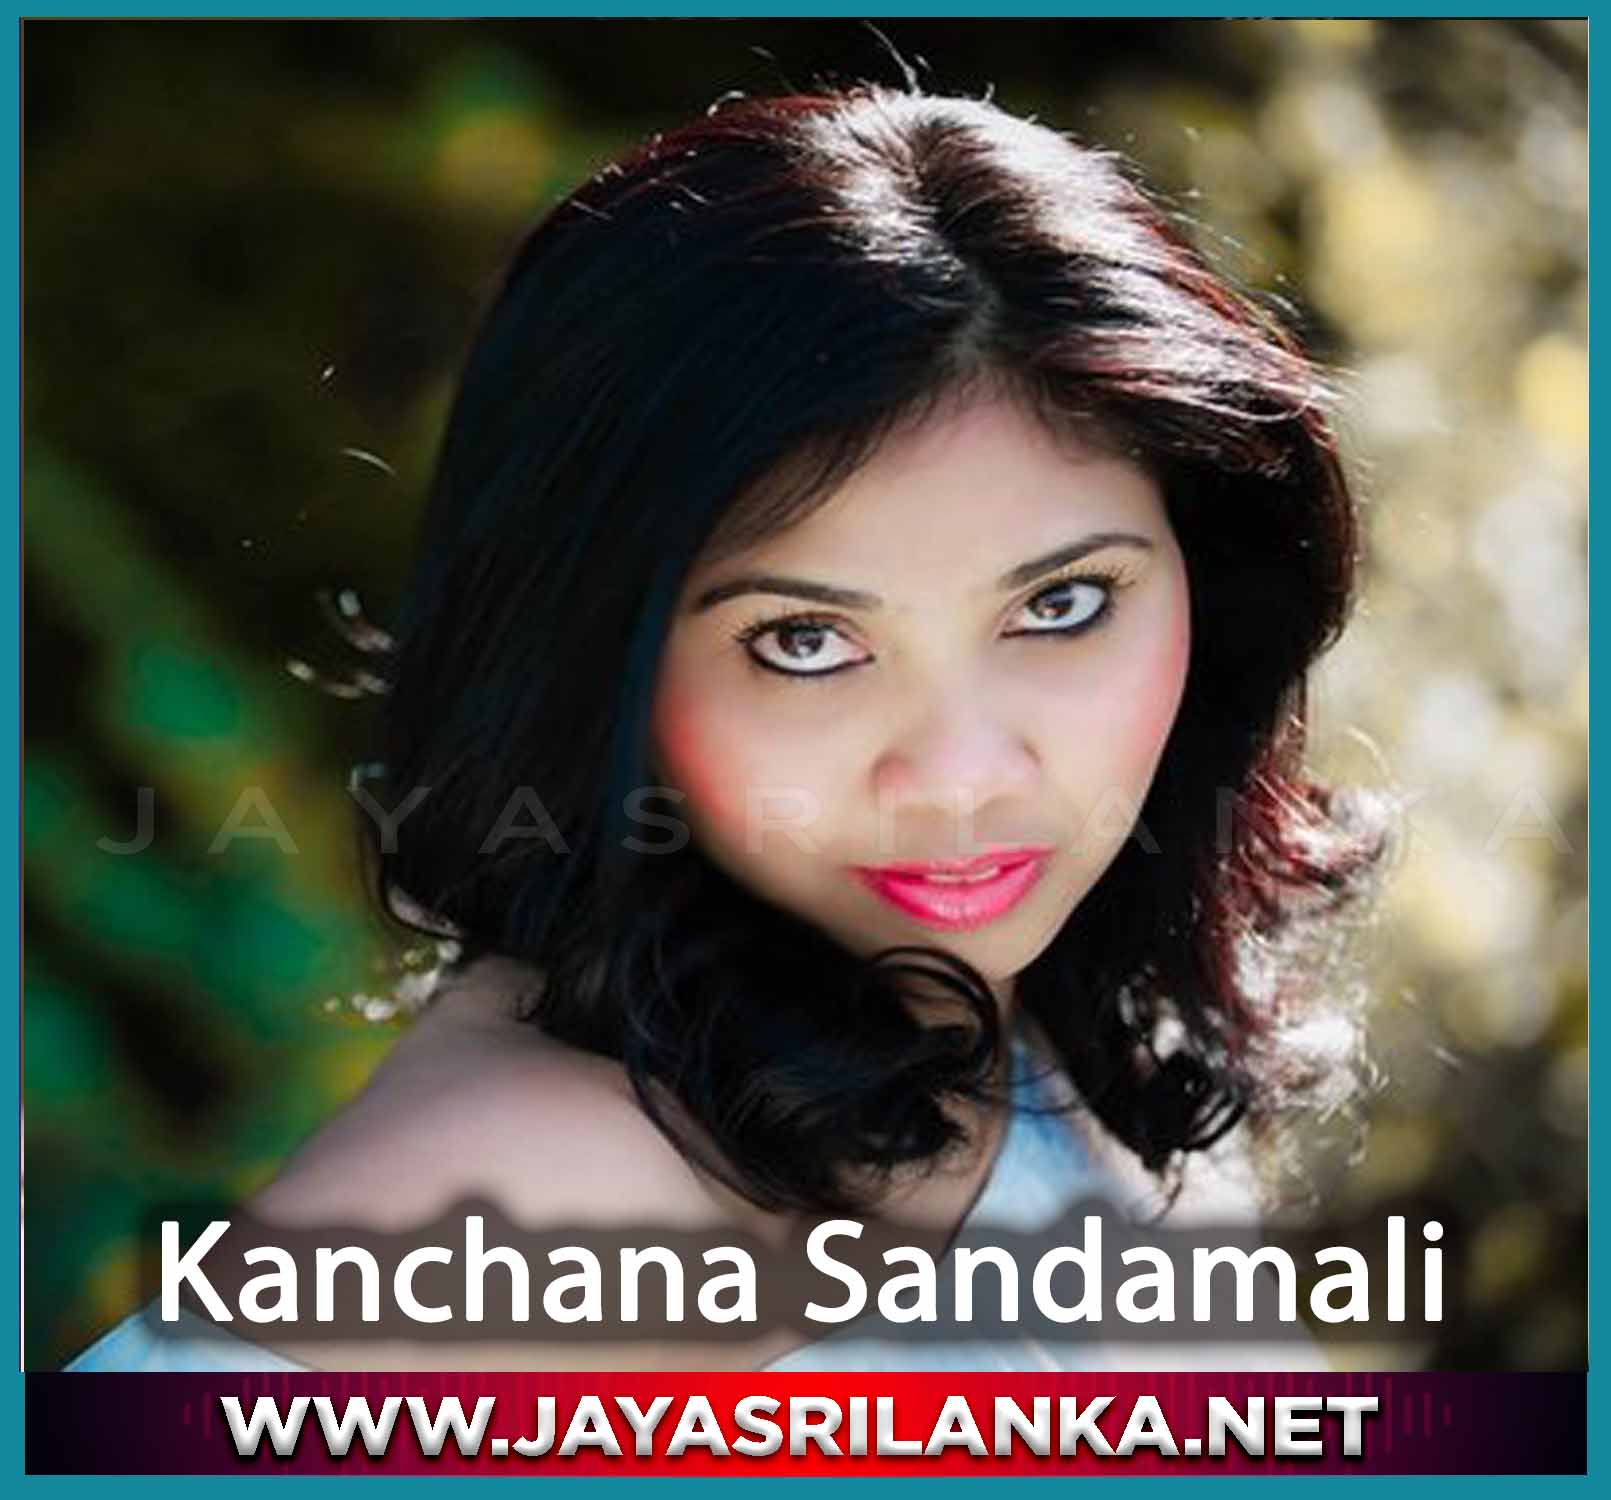 Induwara Nil Denuwan - Kanchana Sandamali mp3 Image